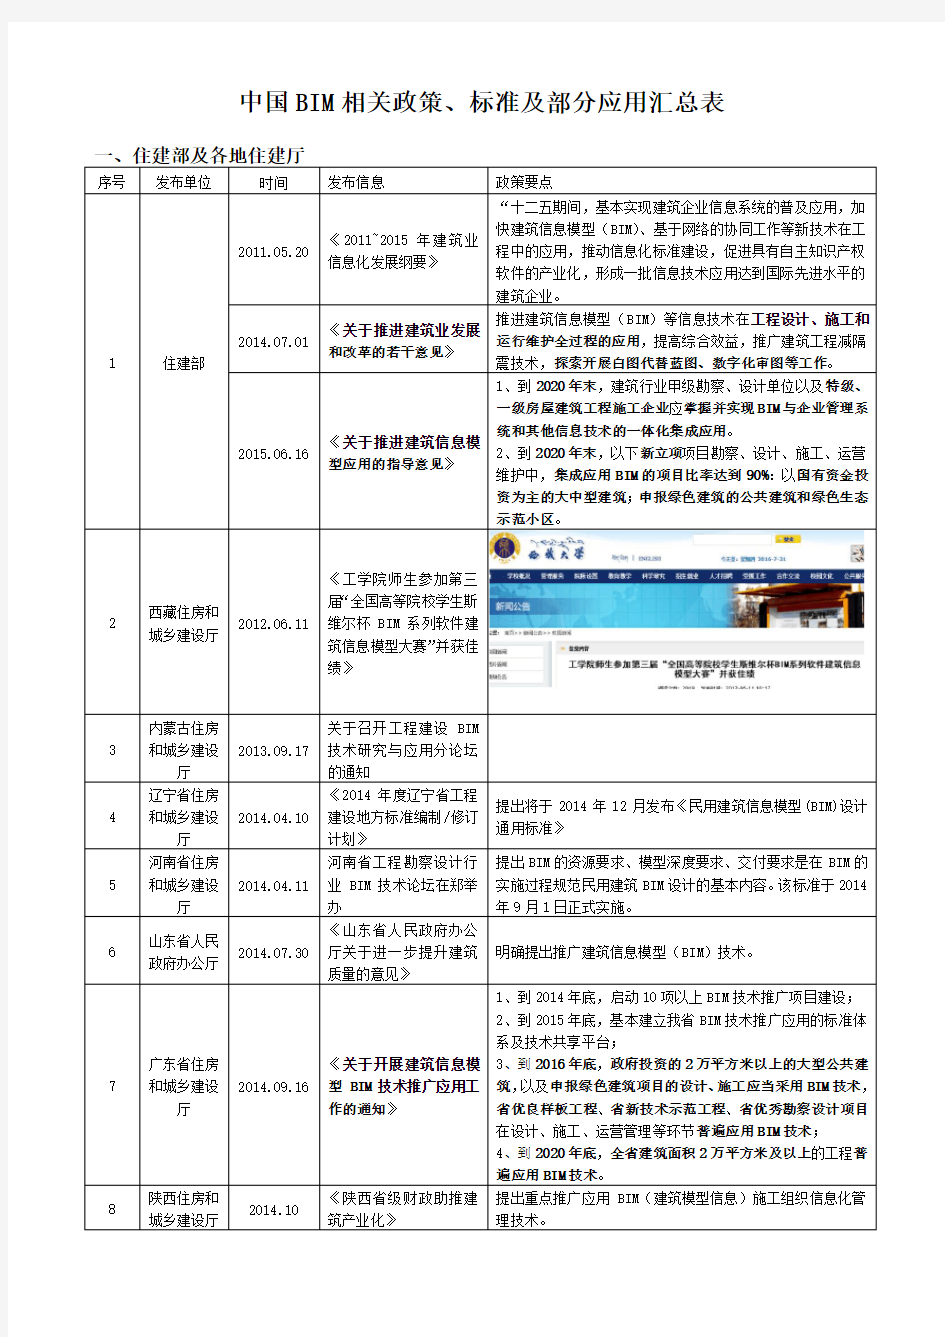 中国BIM相关政策、标准及部分应用汇总表